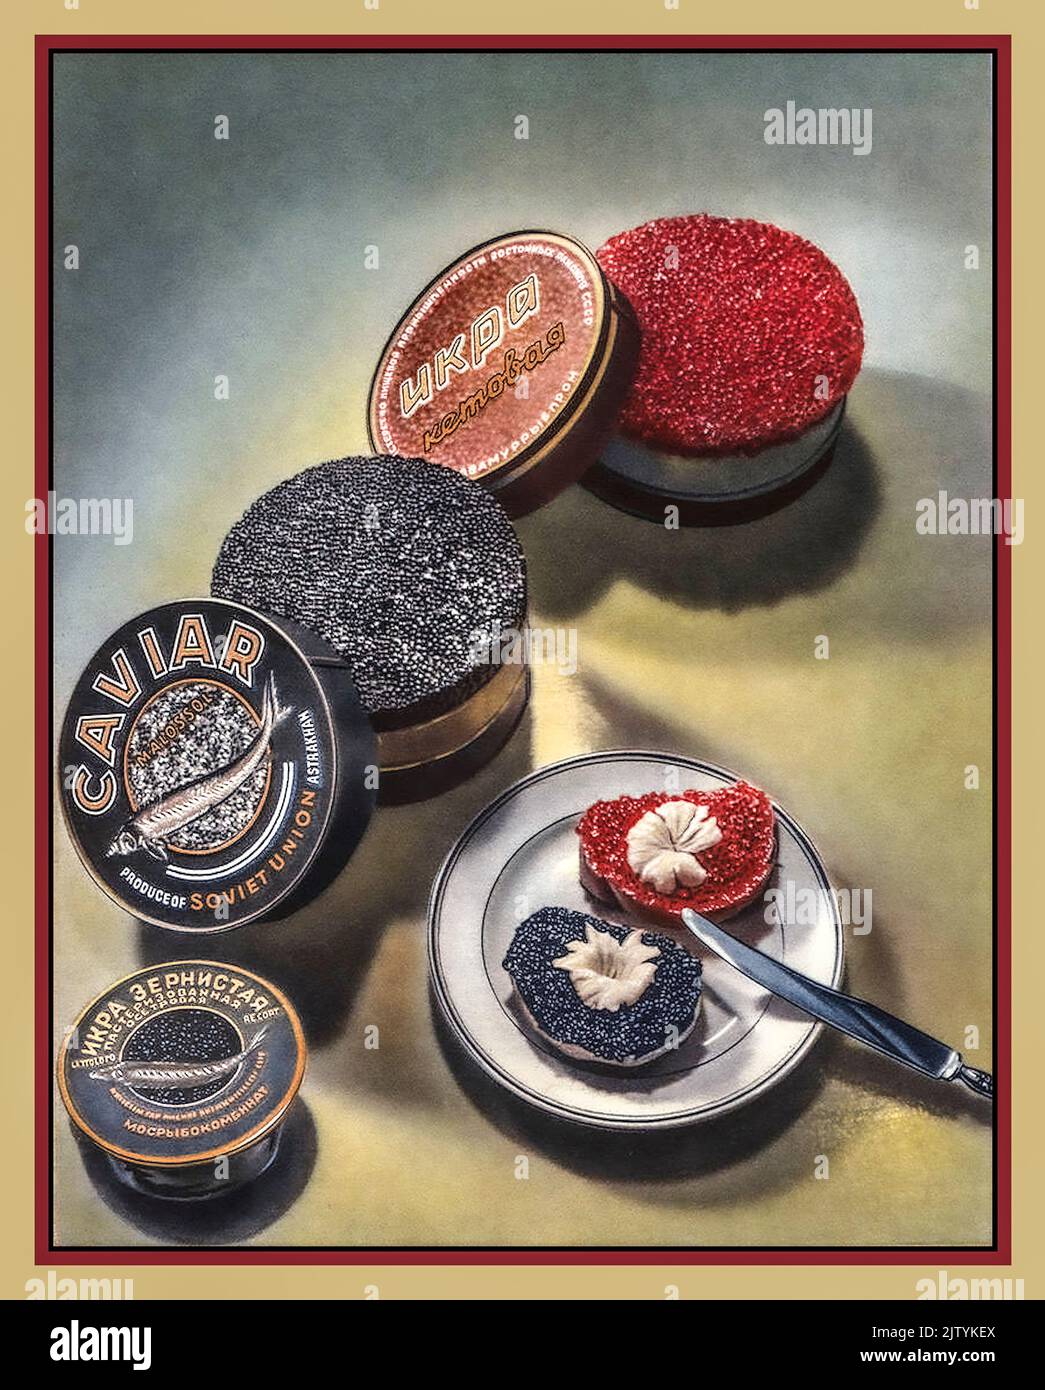 CAVIAR Vintage 1950s Unión Soviética Poster Publicidad Caviar de lujo rojo y negro variedades en latas ruso especialidad pescado alimentos. Raro y muy caro Foto de stock